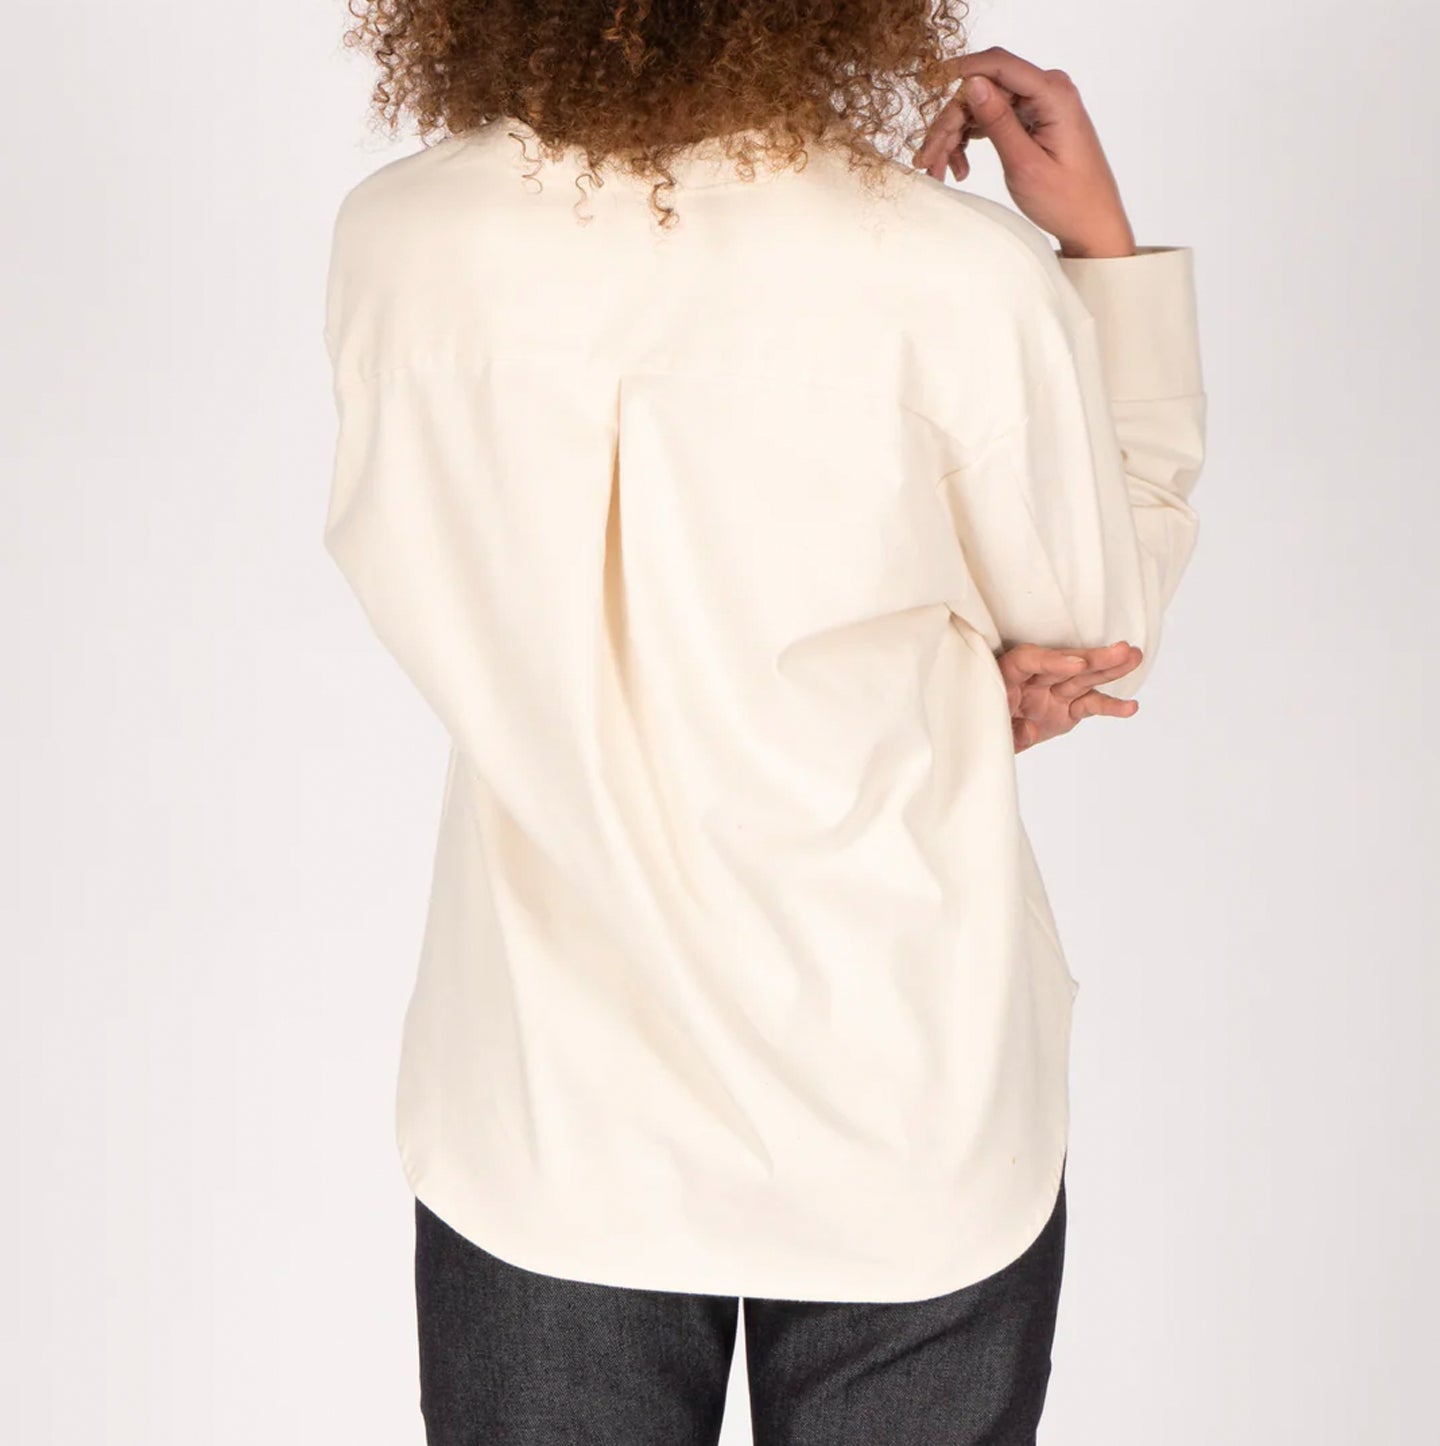 Women's Band Collar Shirt - Cotton Yarn Dyed Flannel - Bone